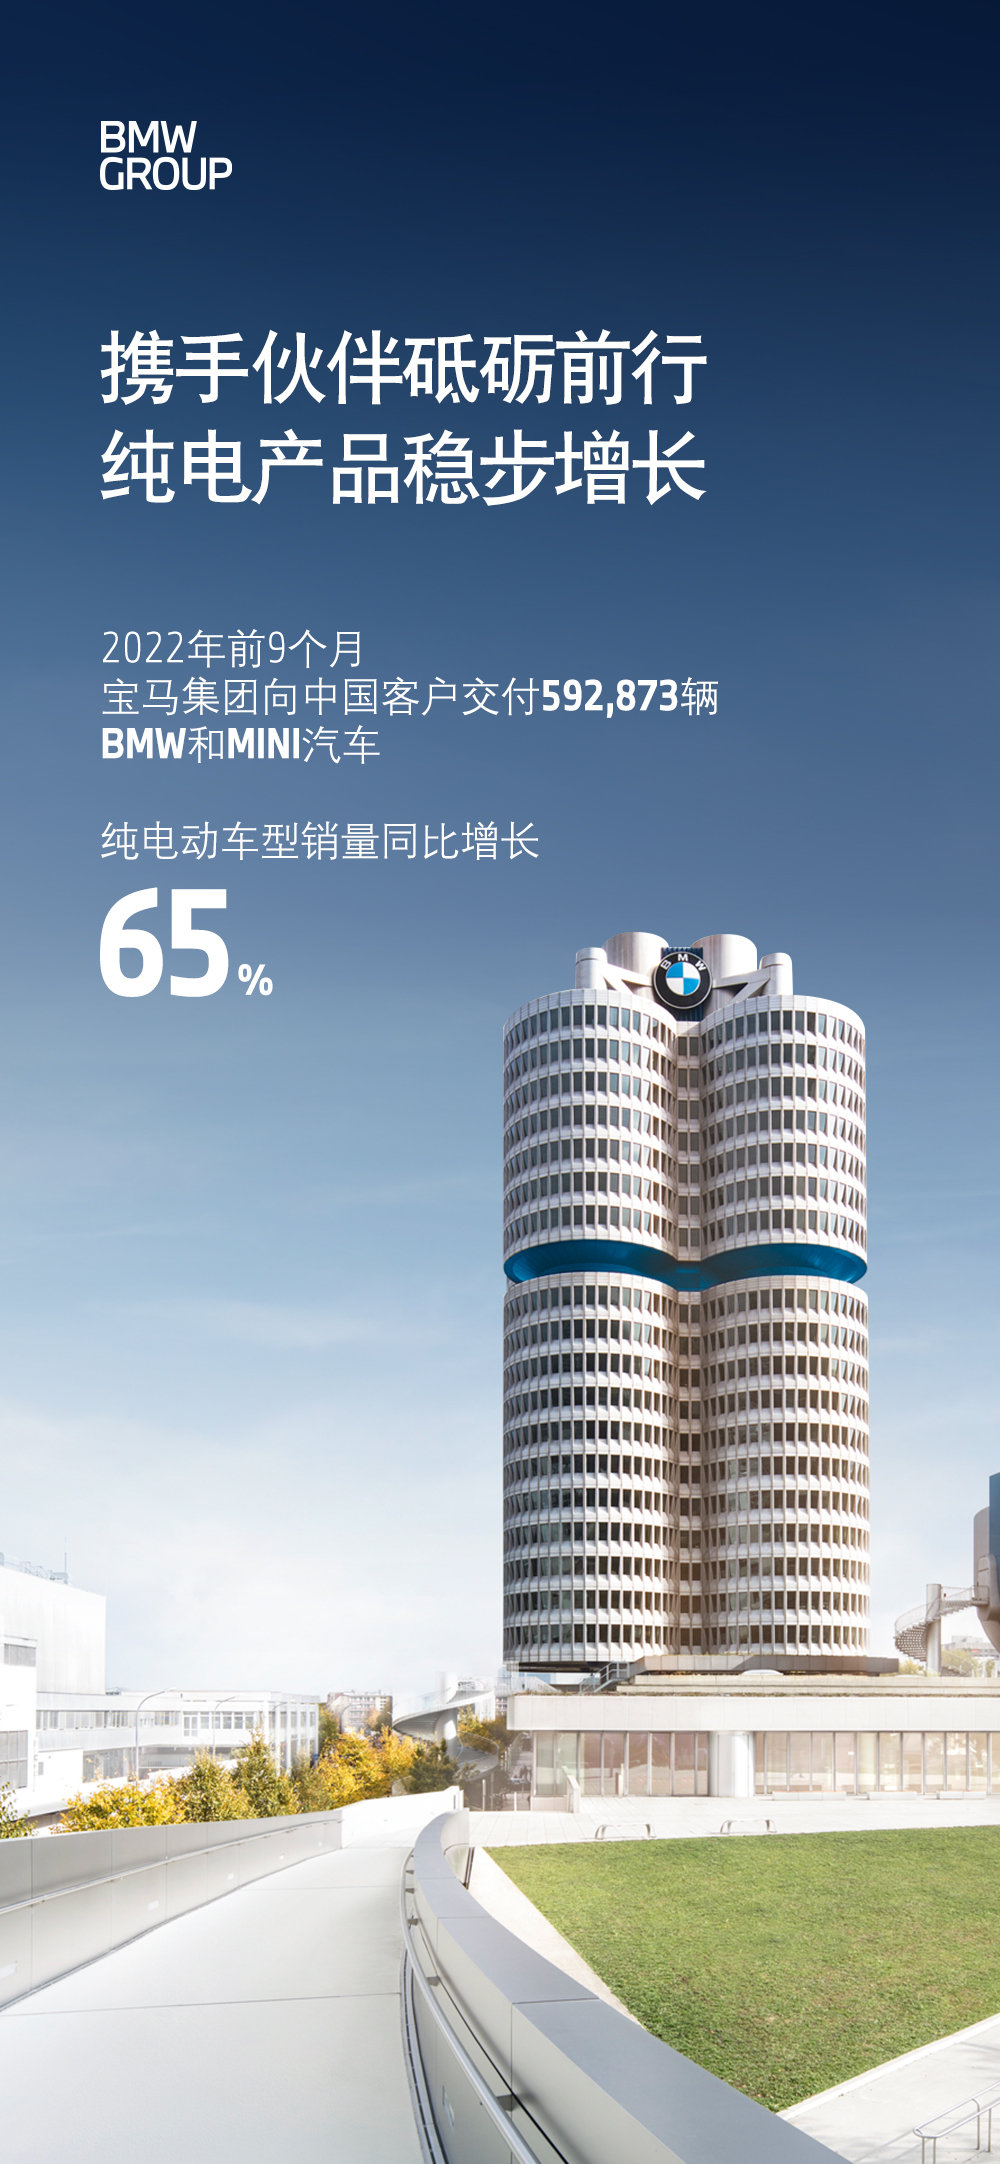 宝马今年前三季度纯电车中国销量同比增长65%